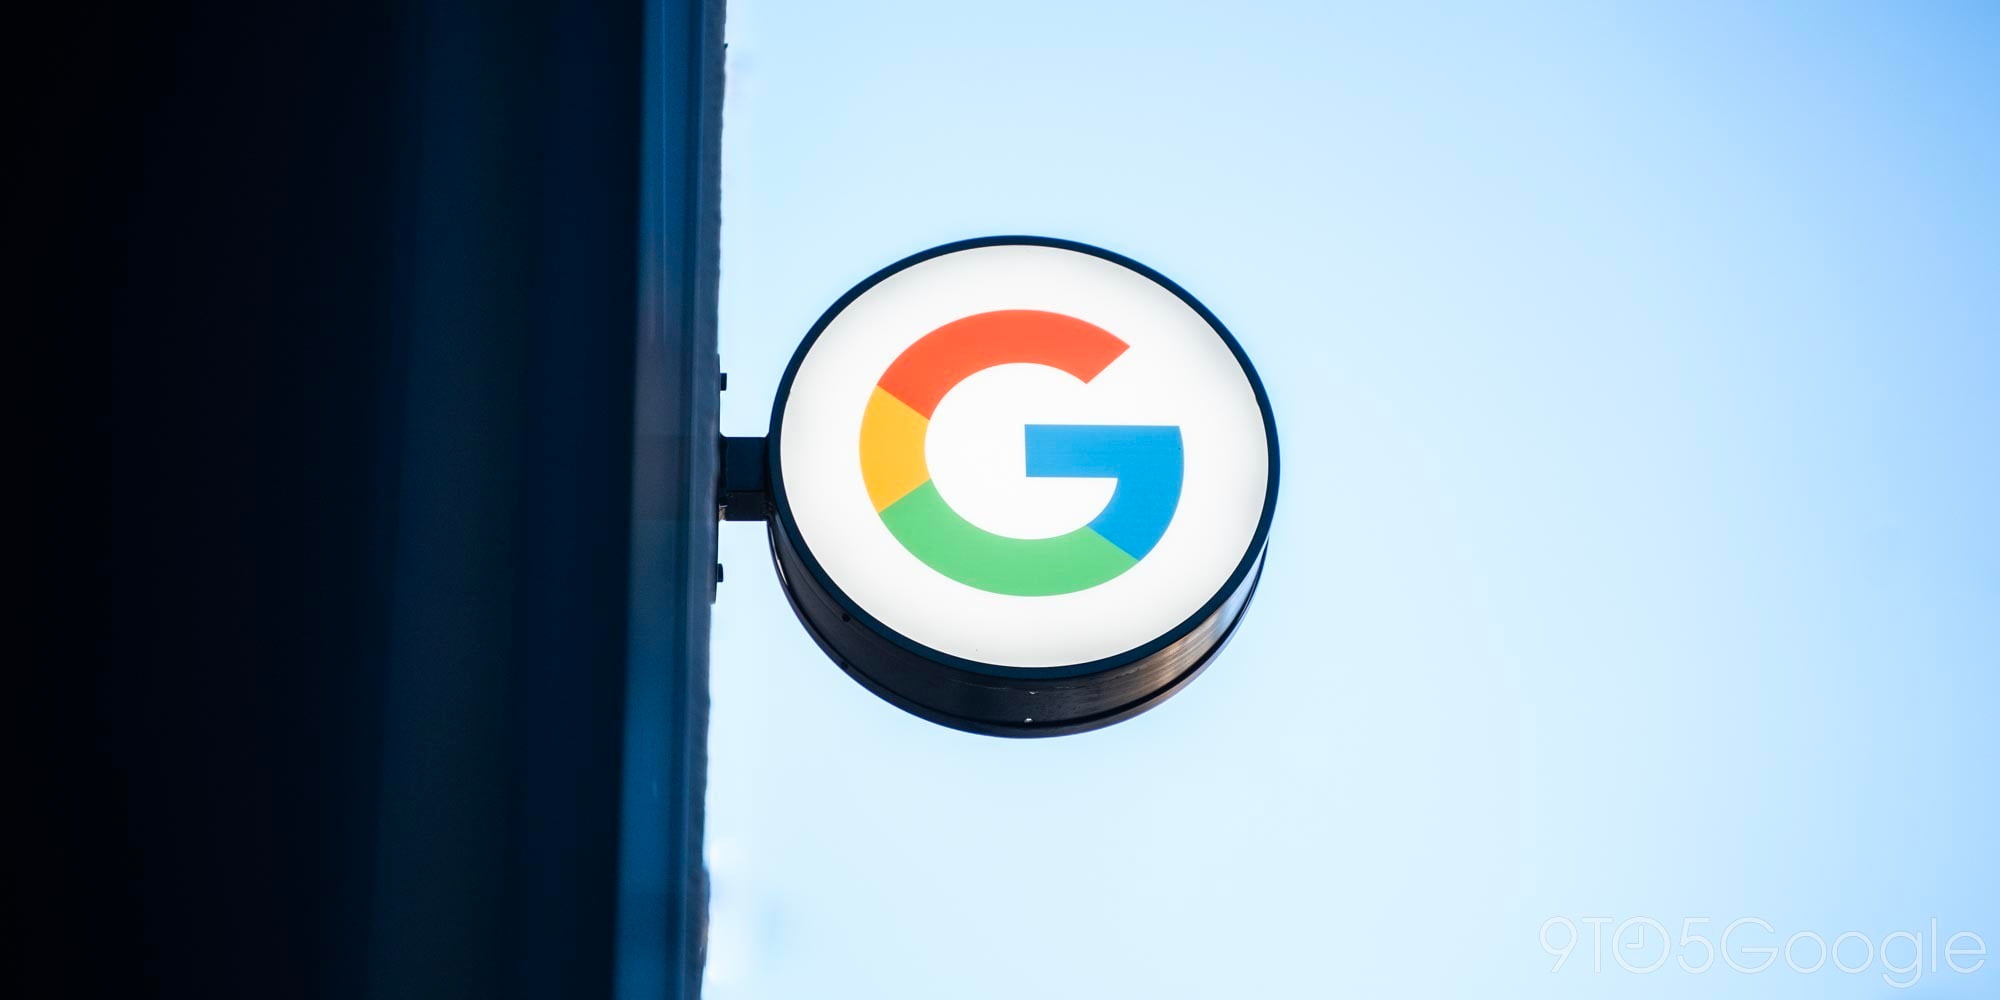 Google Pixel 3 leak